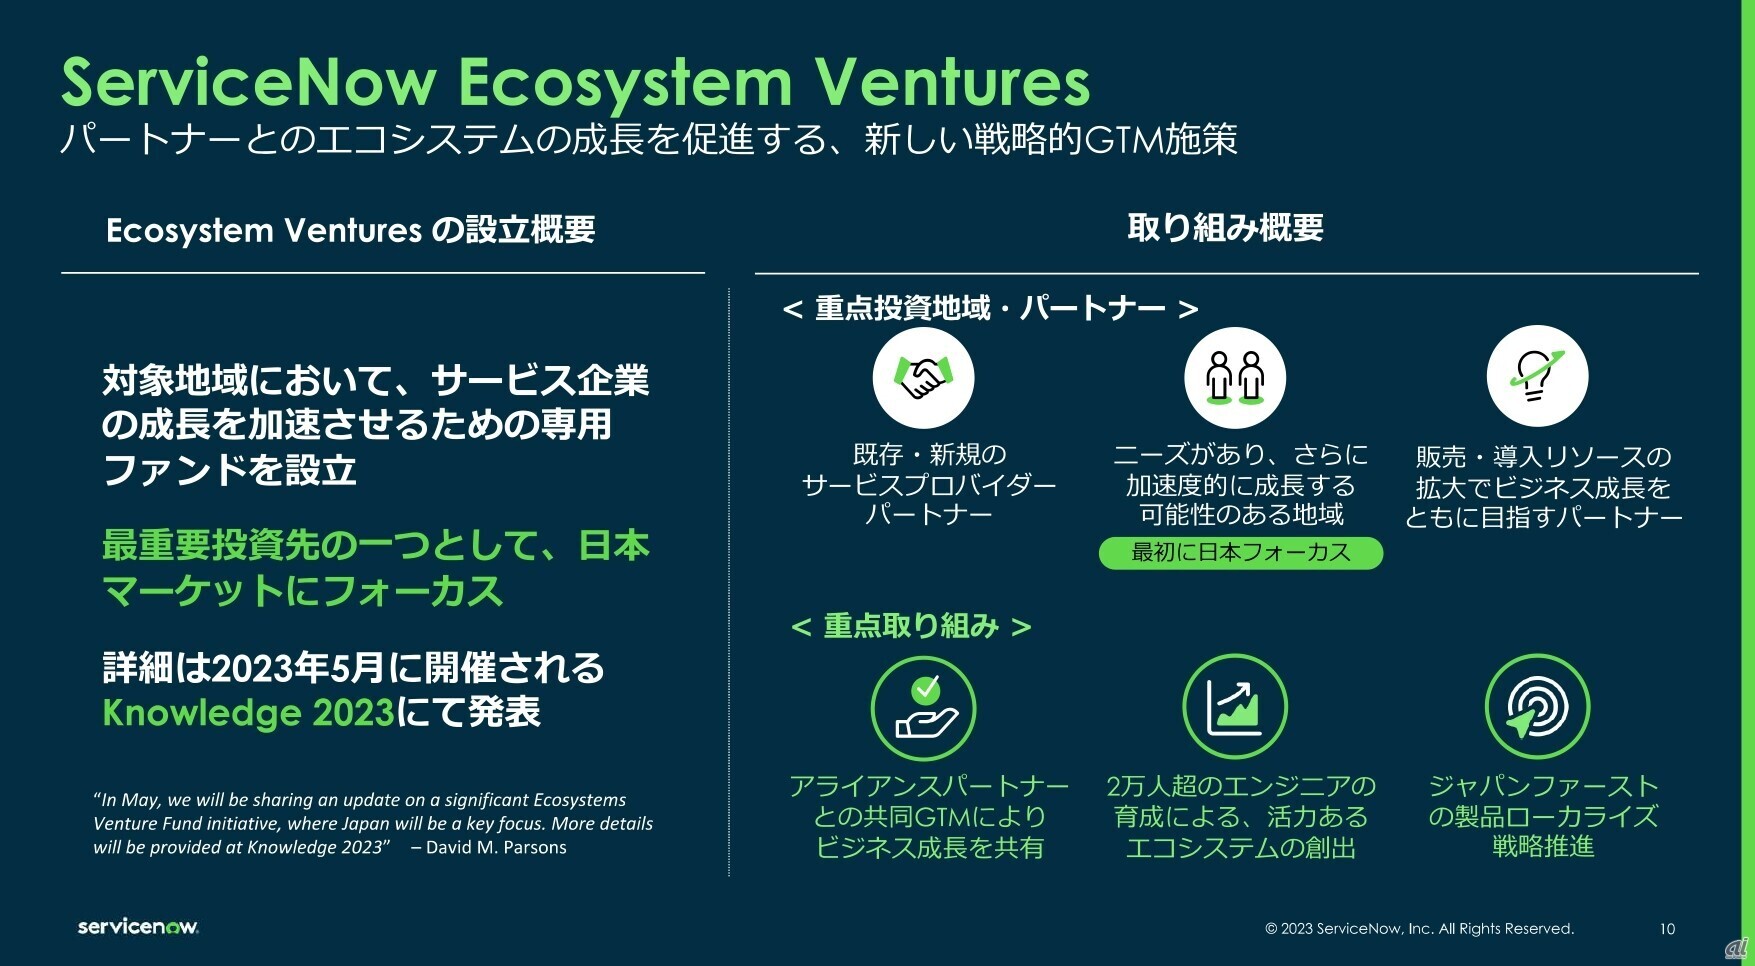 ServiceNow Ecosystem Venturesの概要